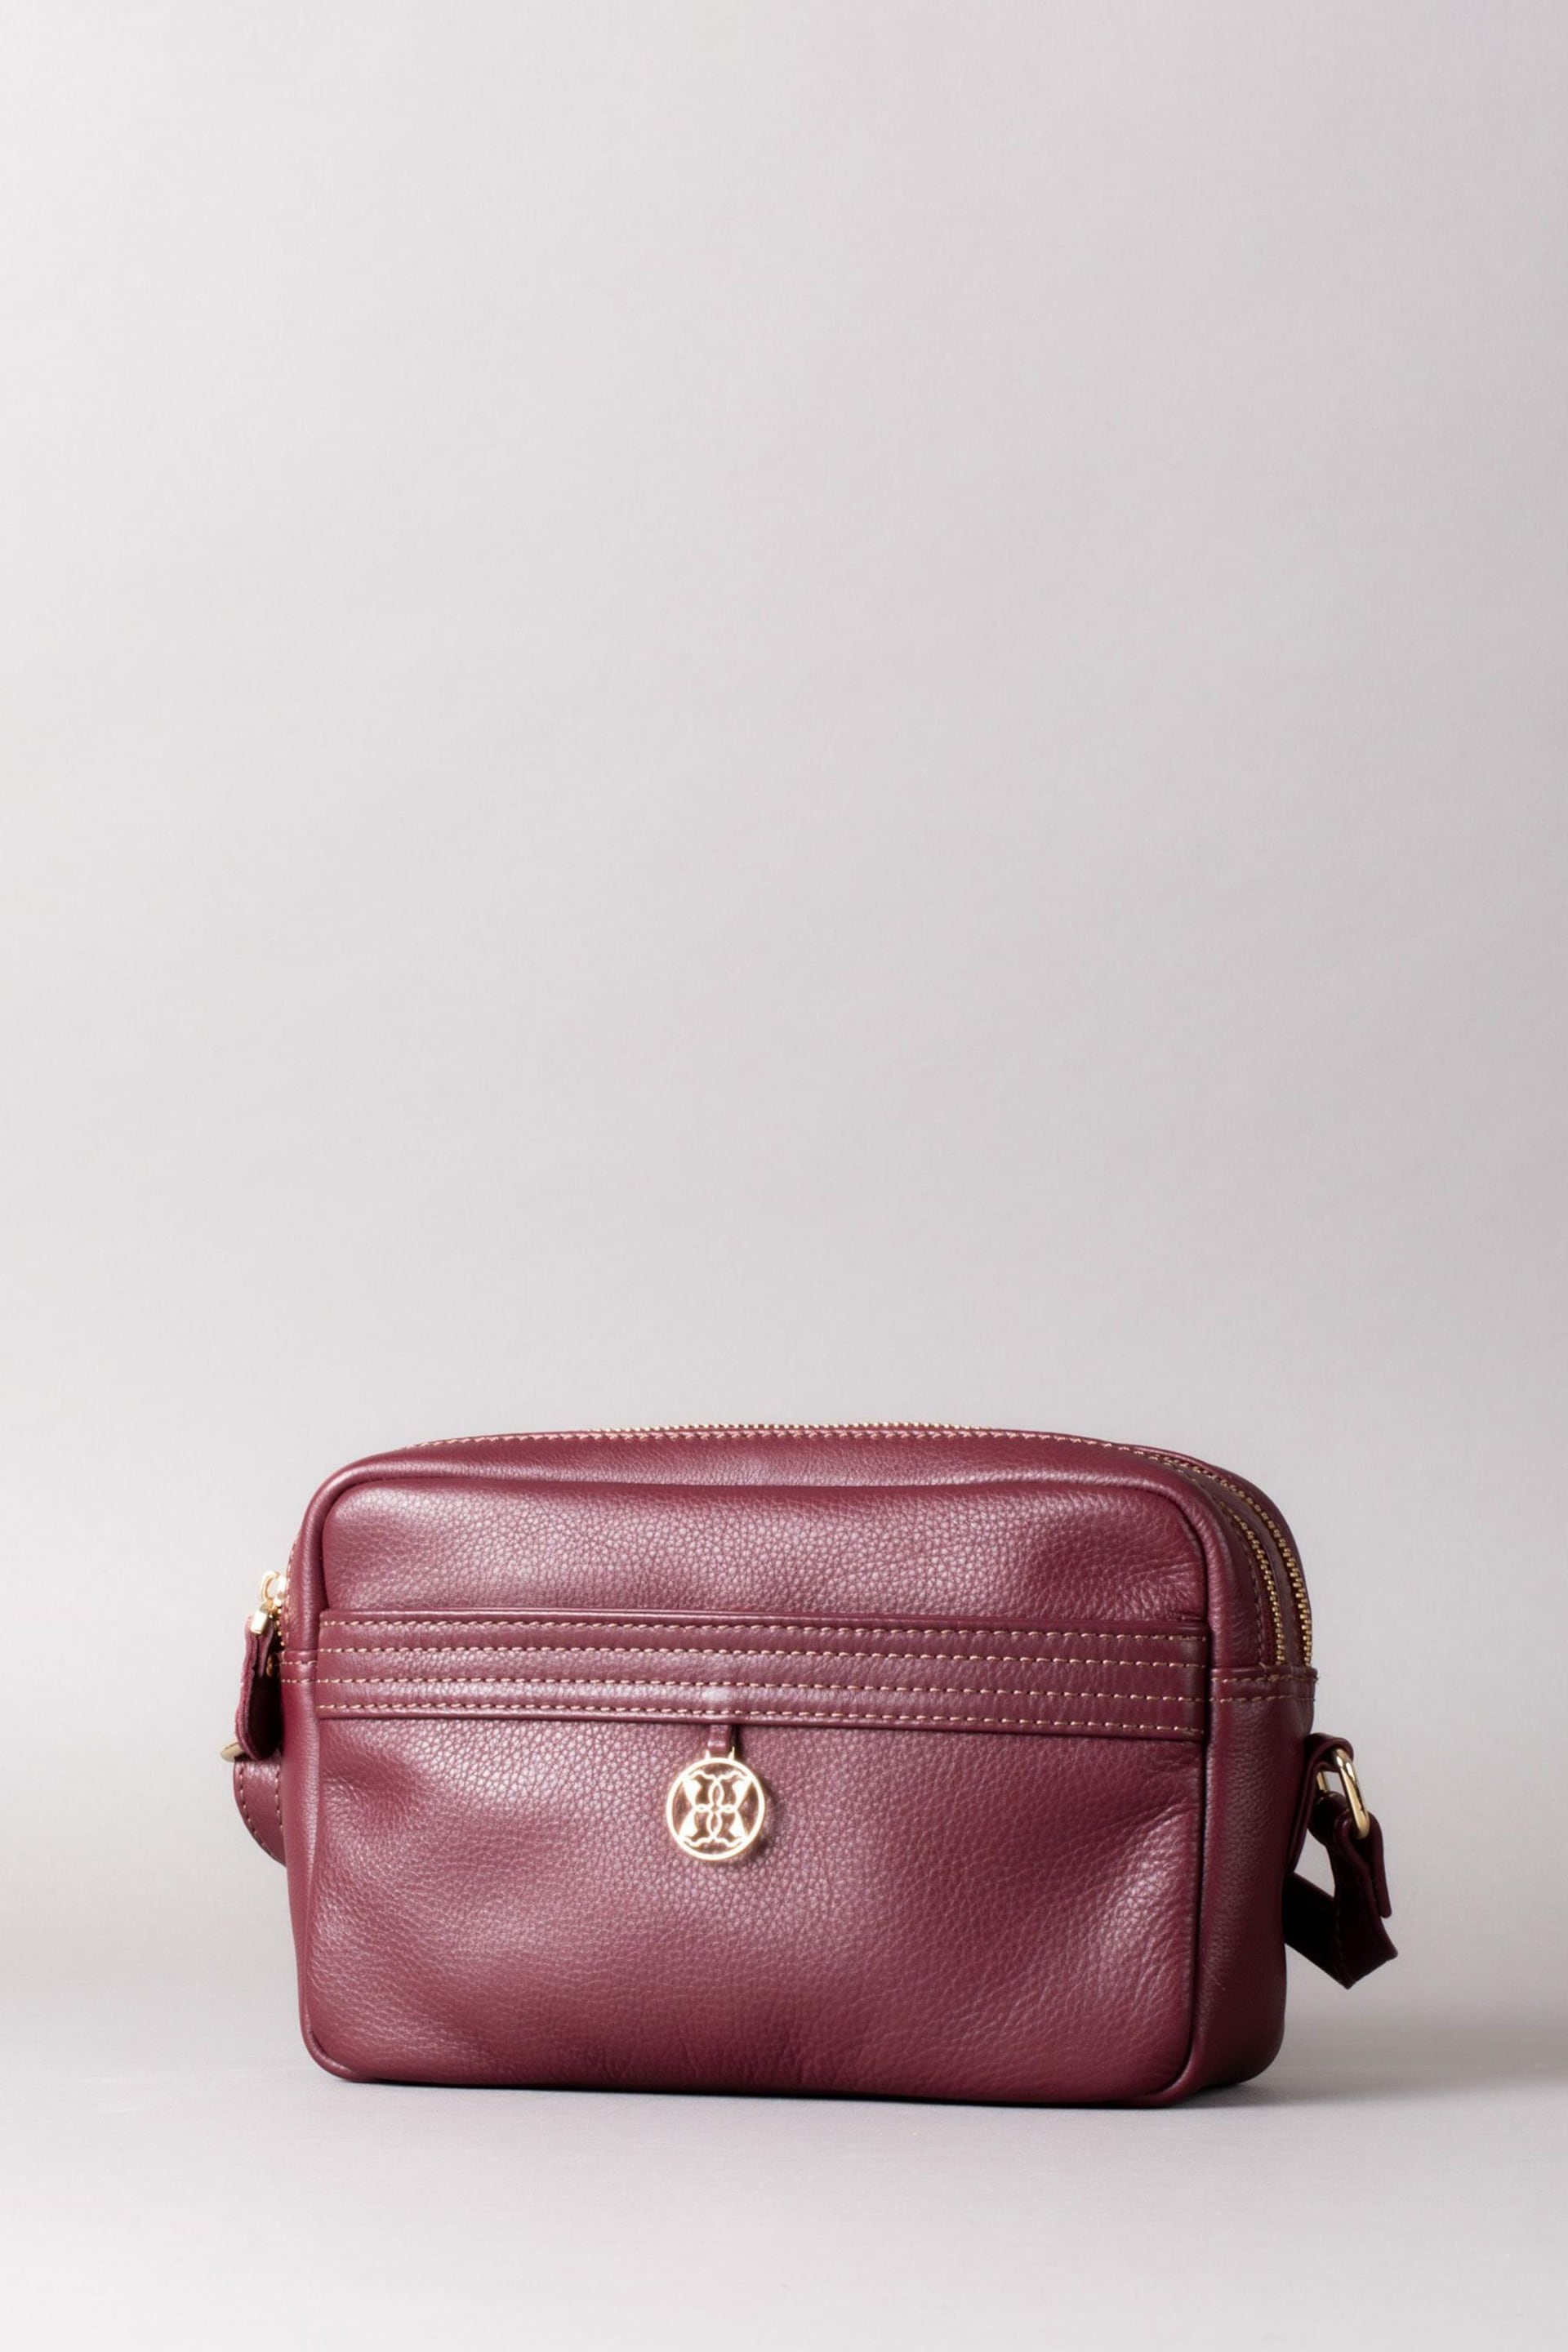 Lakeland Leather Purple Cartmel Boxy Leather Cross-Body Bag - Image 2 of 3